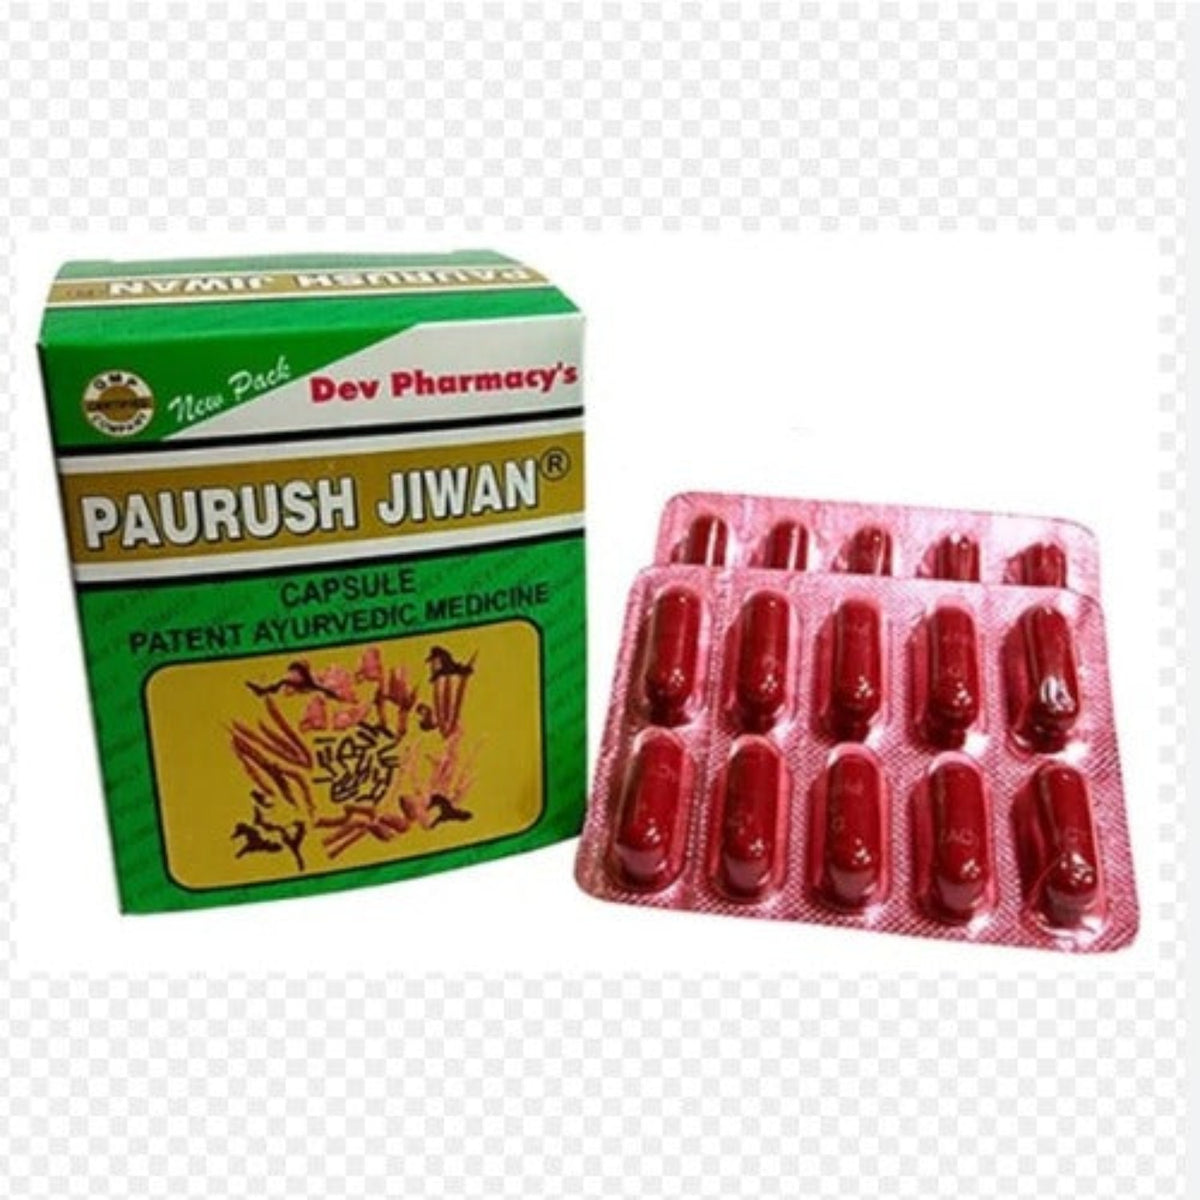 Dev Pharmacy Ayurvedic Paurush Jiwan 60 Capsule